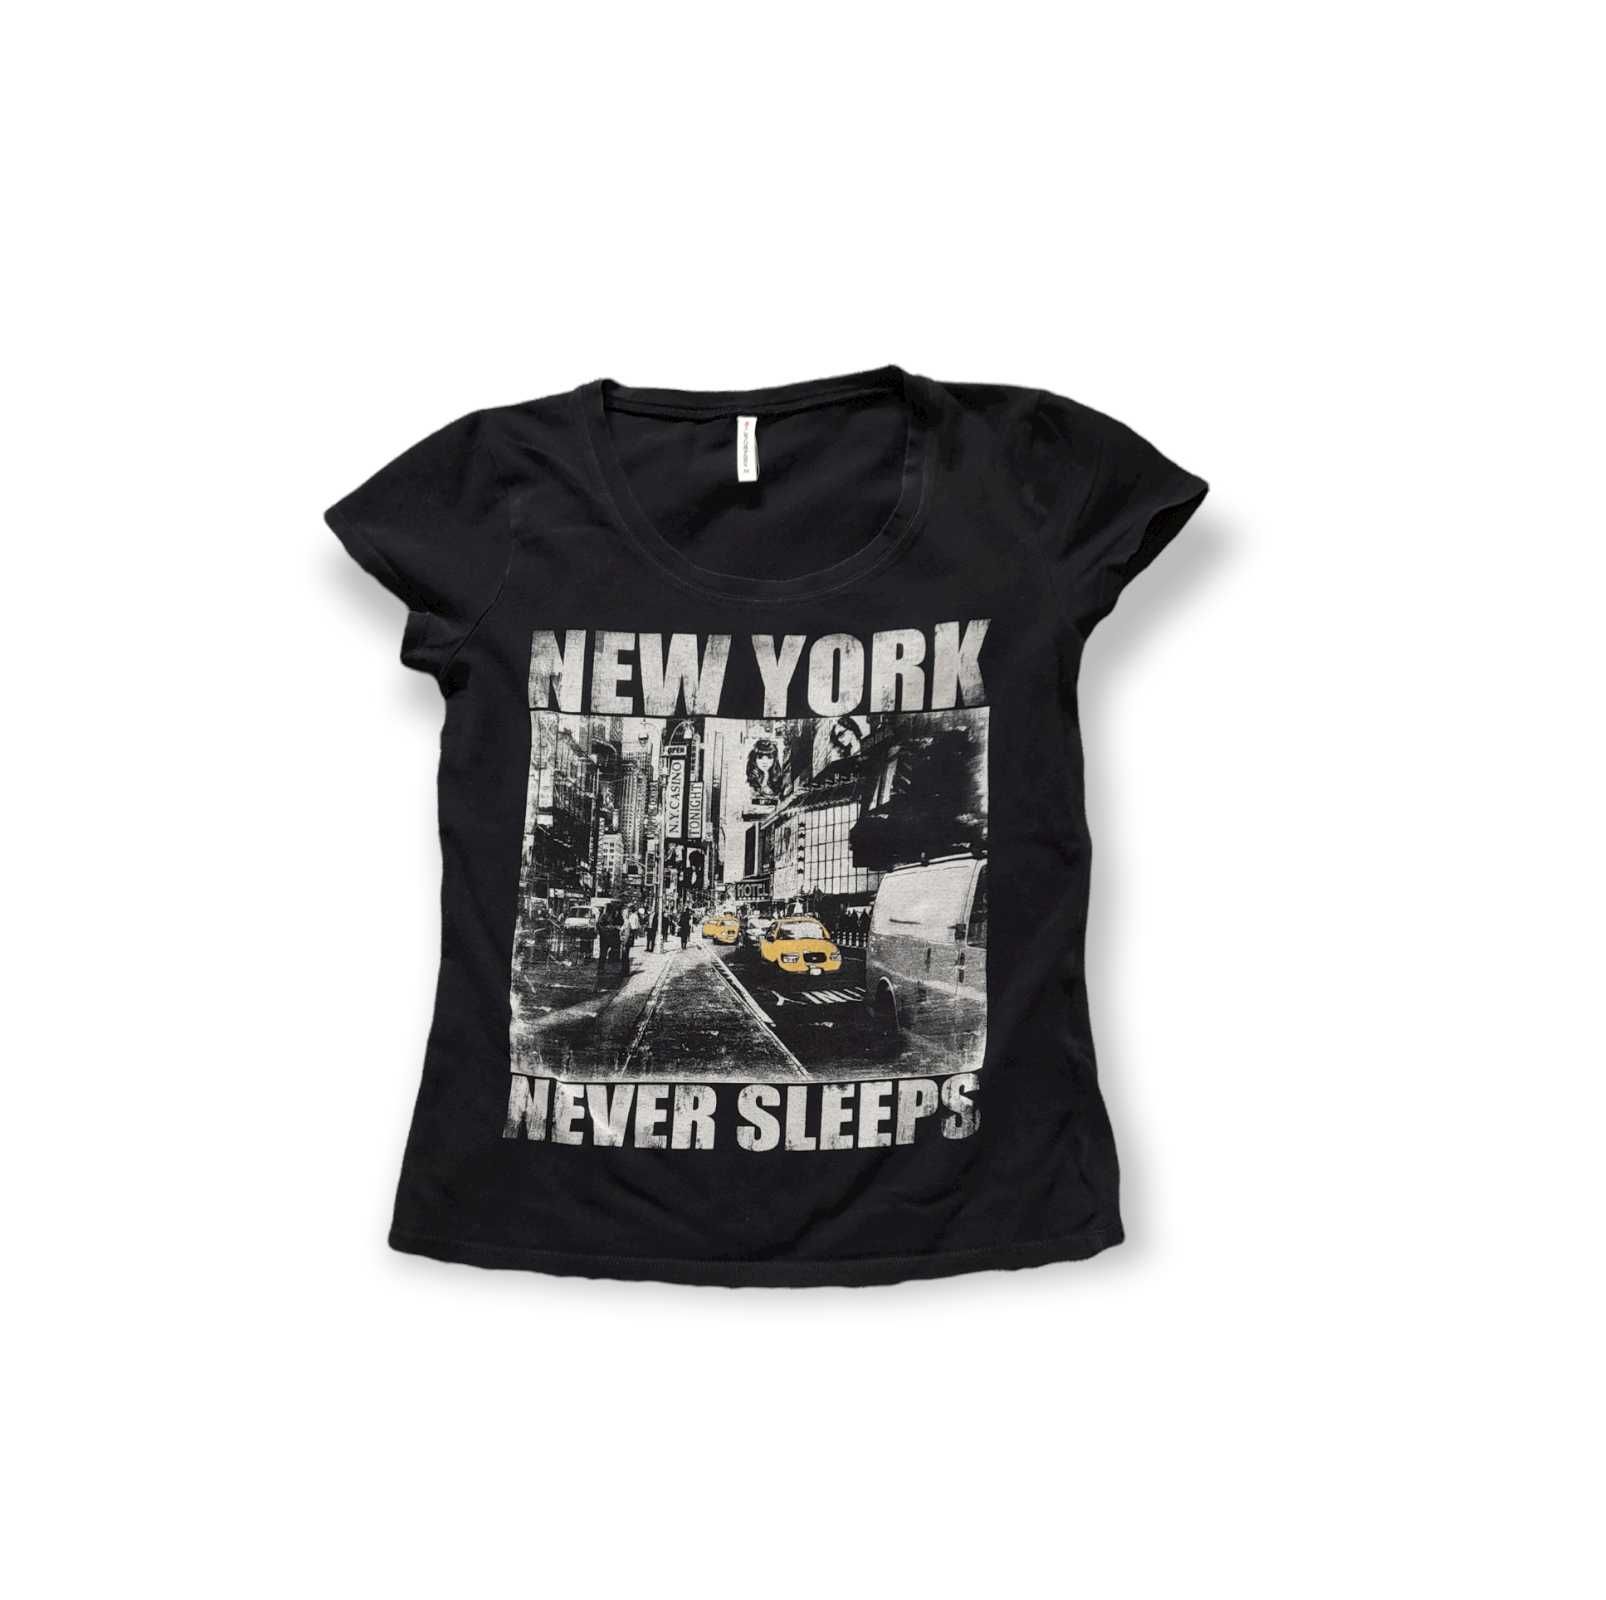 Czarna koszulka z nadrukiem New York. Rozmiar M. fish3one